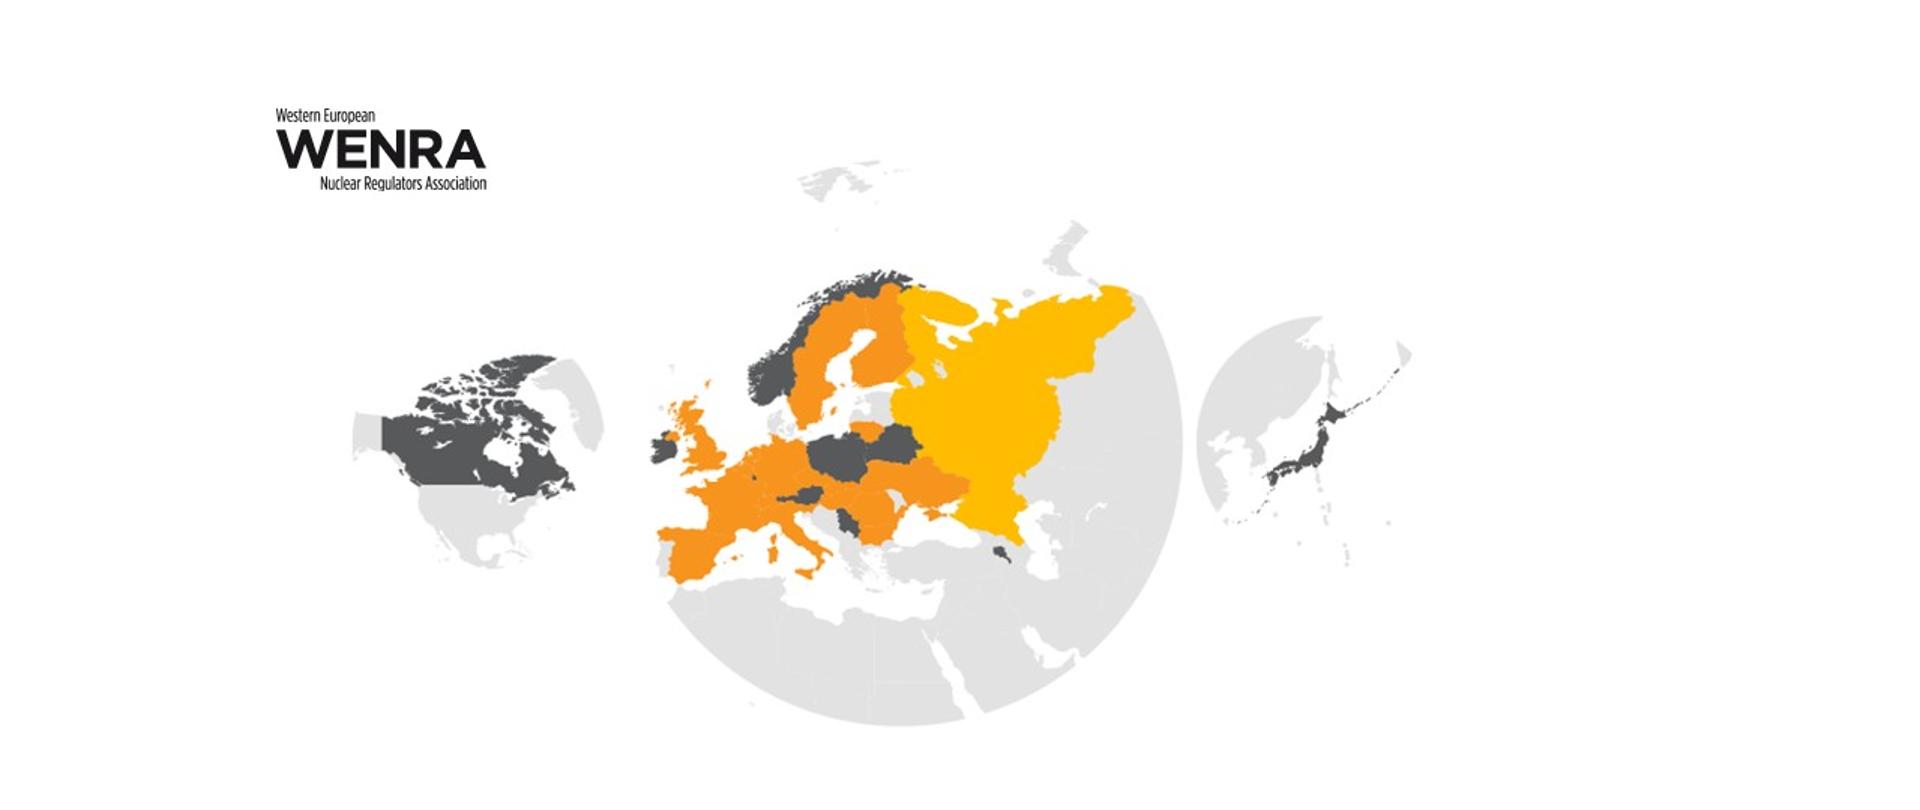 Grafika - na białym tle czarne logo WENRA oraz szara mapa świata. Na pomarańczowo zaznaczono kraje członkowskie WENRA, na szaro - kraje w roli obserwatora Stowarzyszenia. 